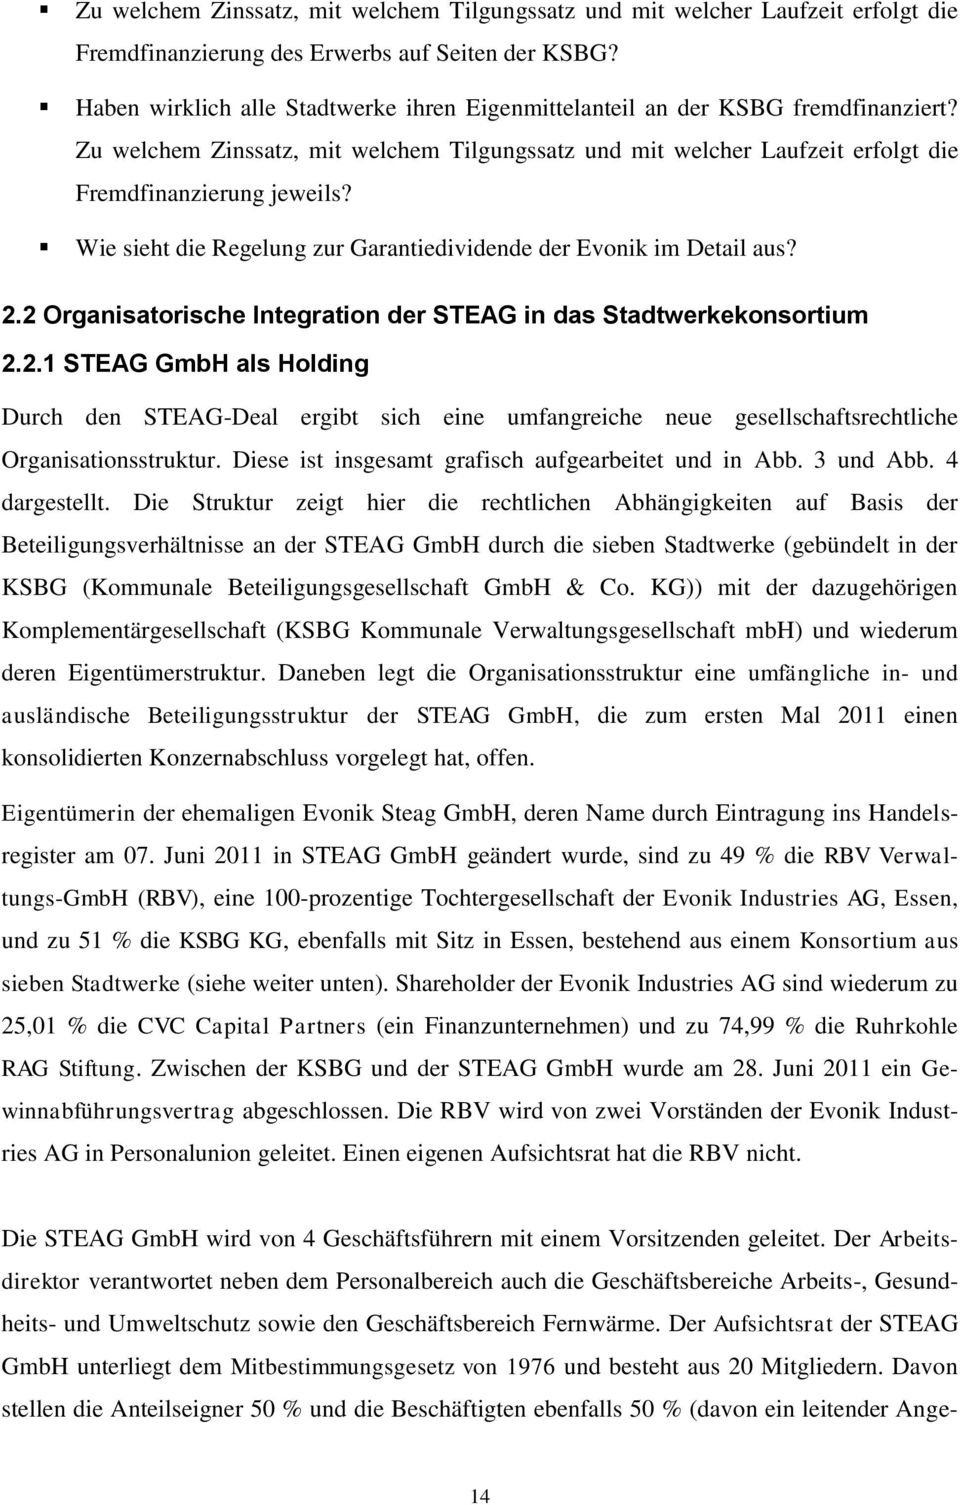 Wie sieht die Regelung zur Garantiedividende der Evonik im Detail aus? 2.2 Organisatorische Integration der STEAG in das Stadtwerkekonsortium 2.2.1 STEAG GmbH als Holding Durch den STEAG-Deal ergibt sich eine umfangreiche neue gesellschaftsrechtliche Organisationsstruktur.